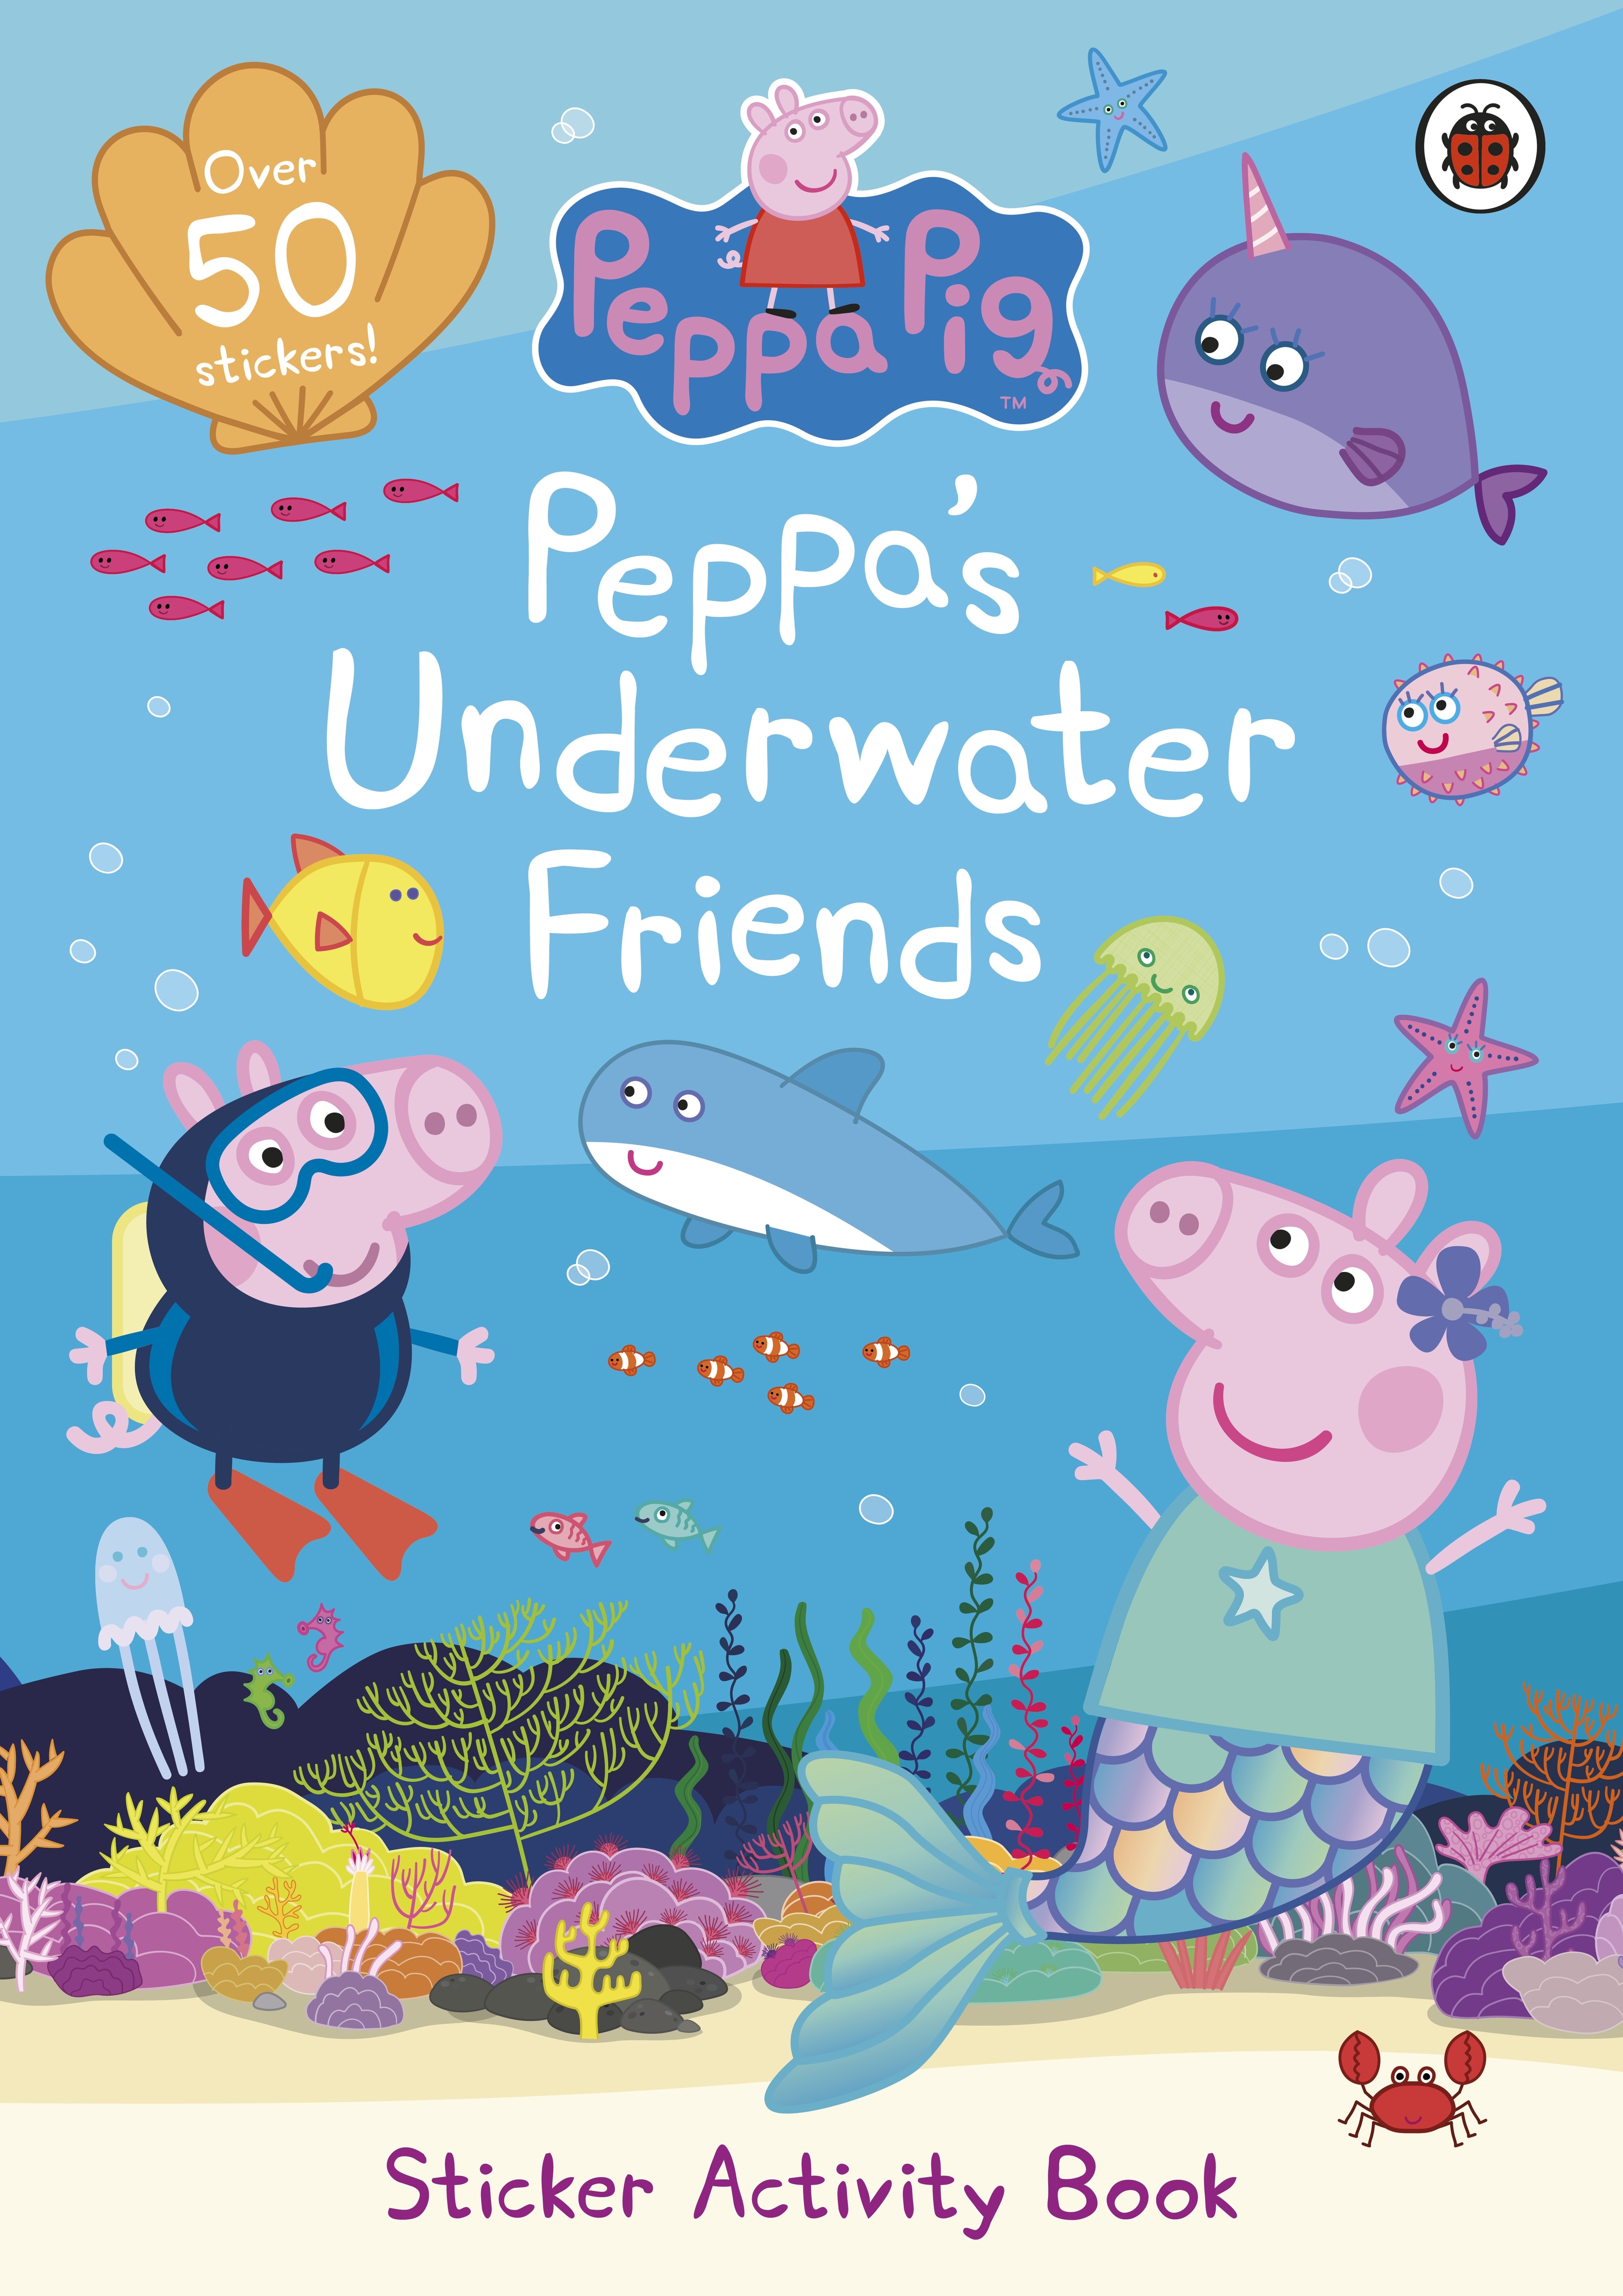 Book “Peppa Pig: Peppa's Underwater Friends” by Peppa Pig — September 30, 2021